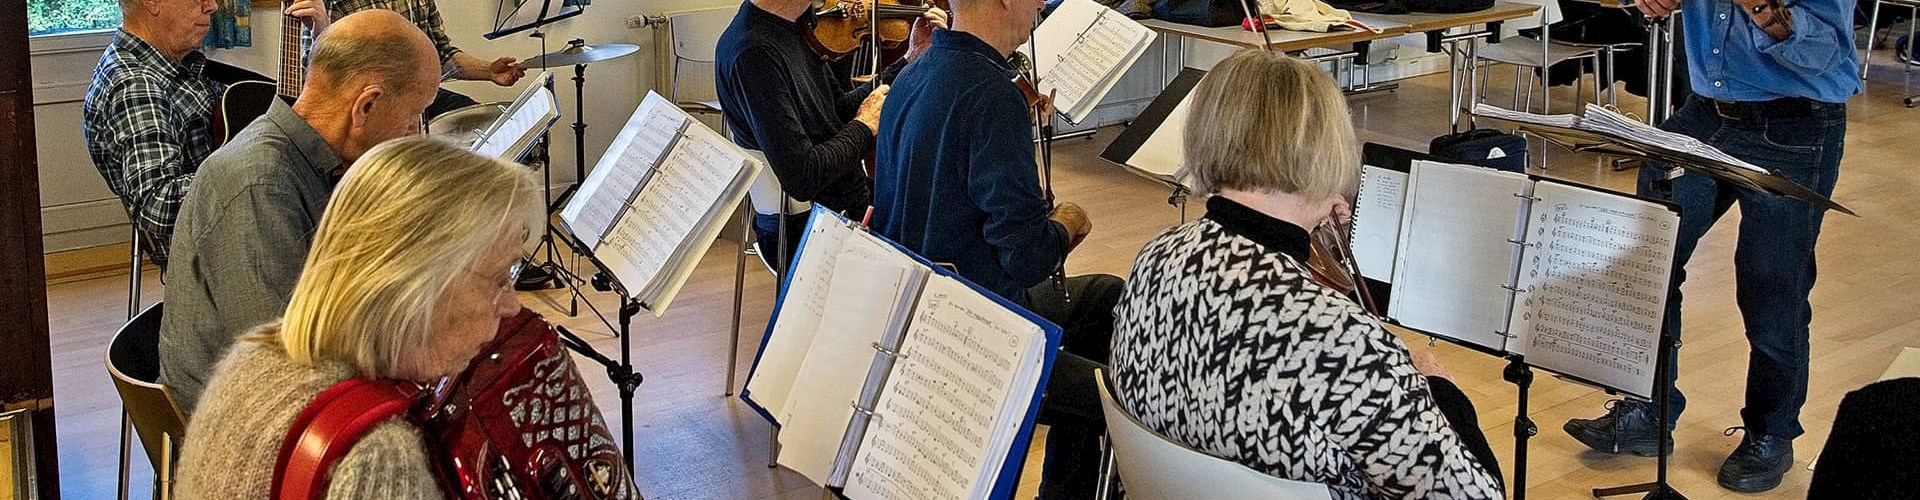 'Evergreenorkestret' ved FOF Aarhus under ledelse af Poul Bech Christensen